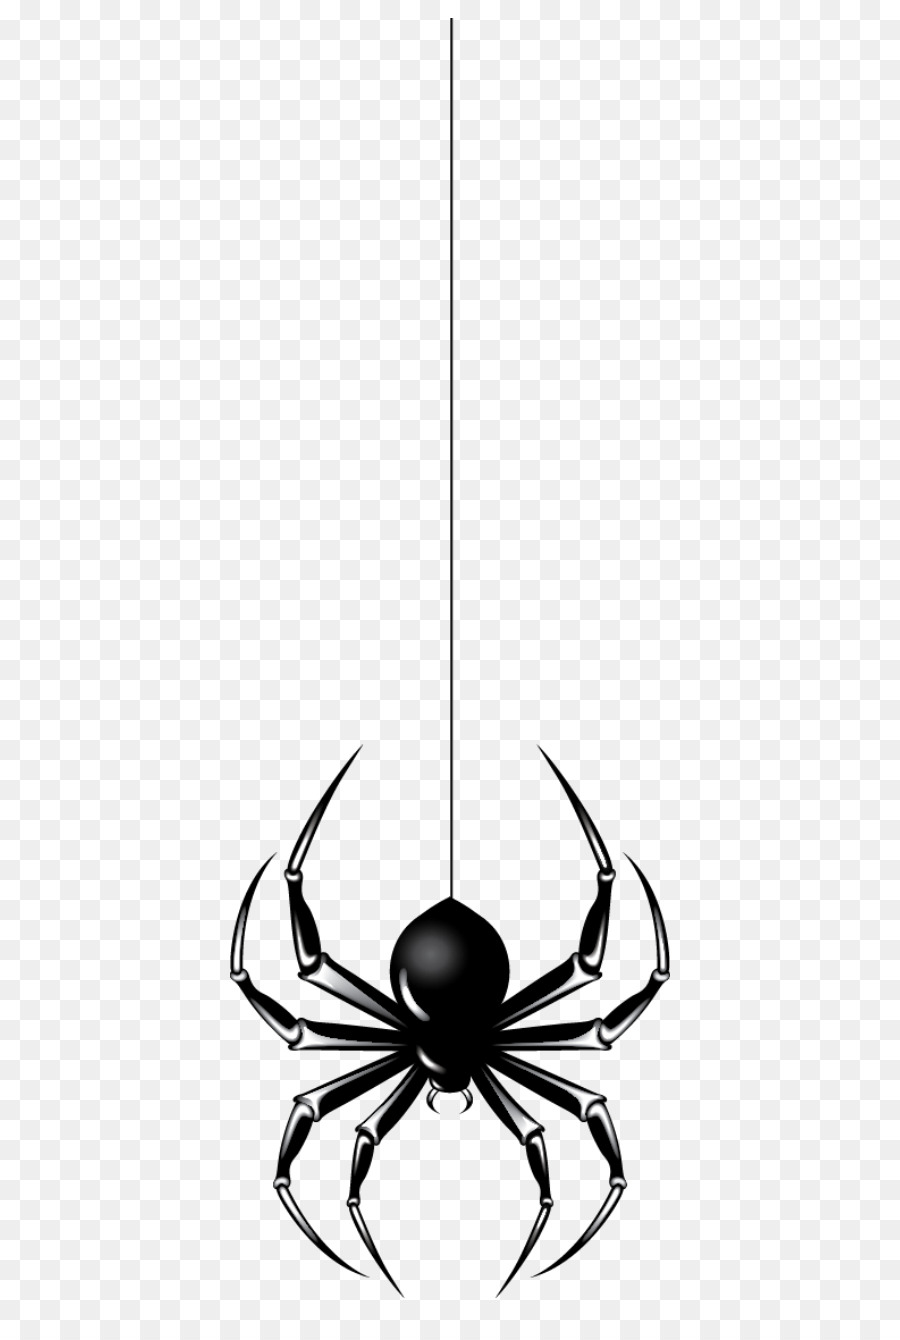 Spider Halloween Clip art - Hanging Spider png download - 472*1328 - Free Transparent Spider png Download.